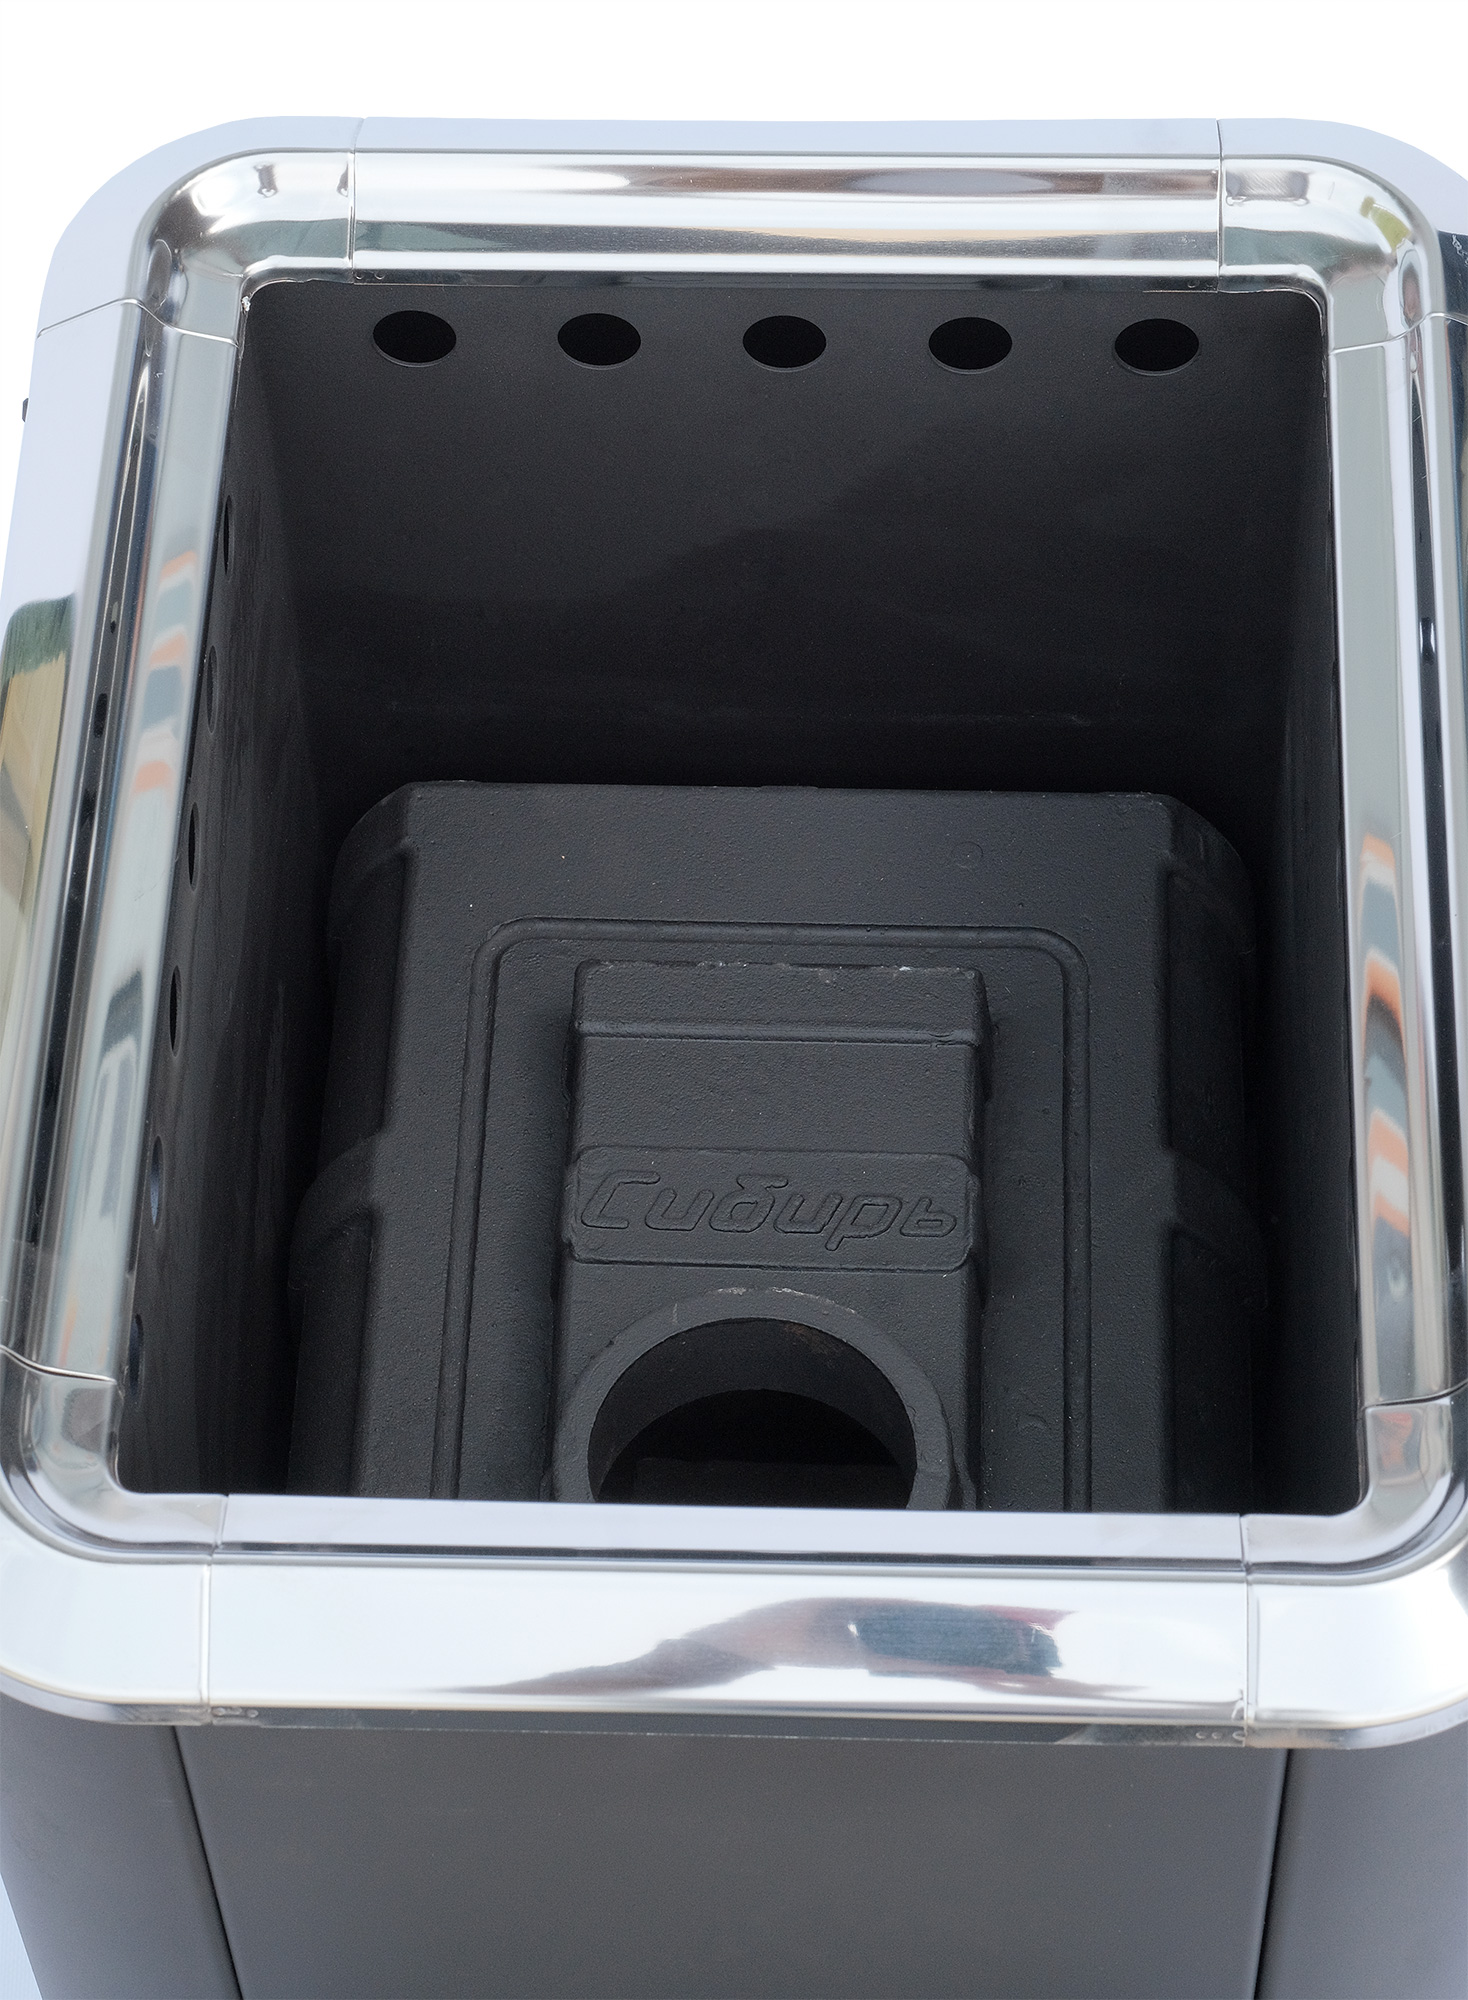 Фото товара Печь банная НМК Сибирь 18 универсальная чугунная дверка (конвекционная). Изображение №2